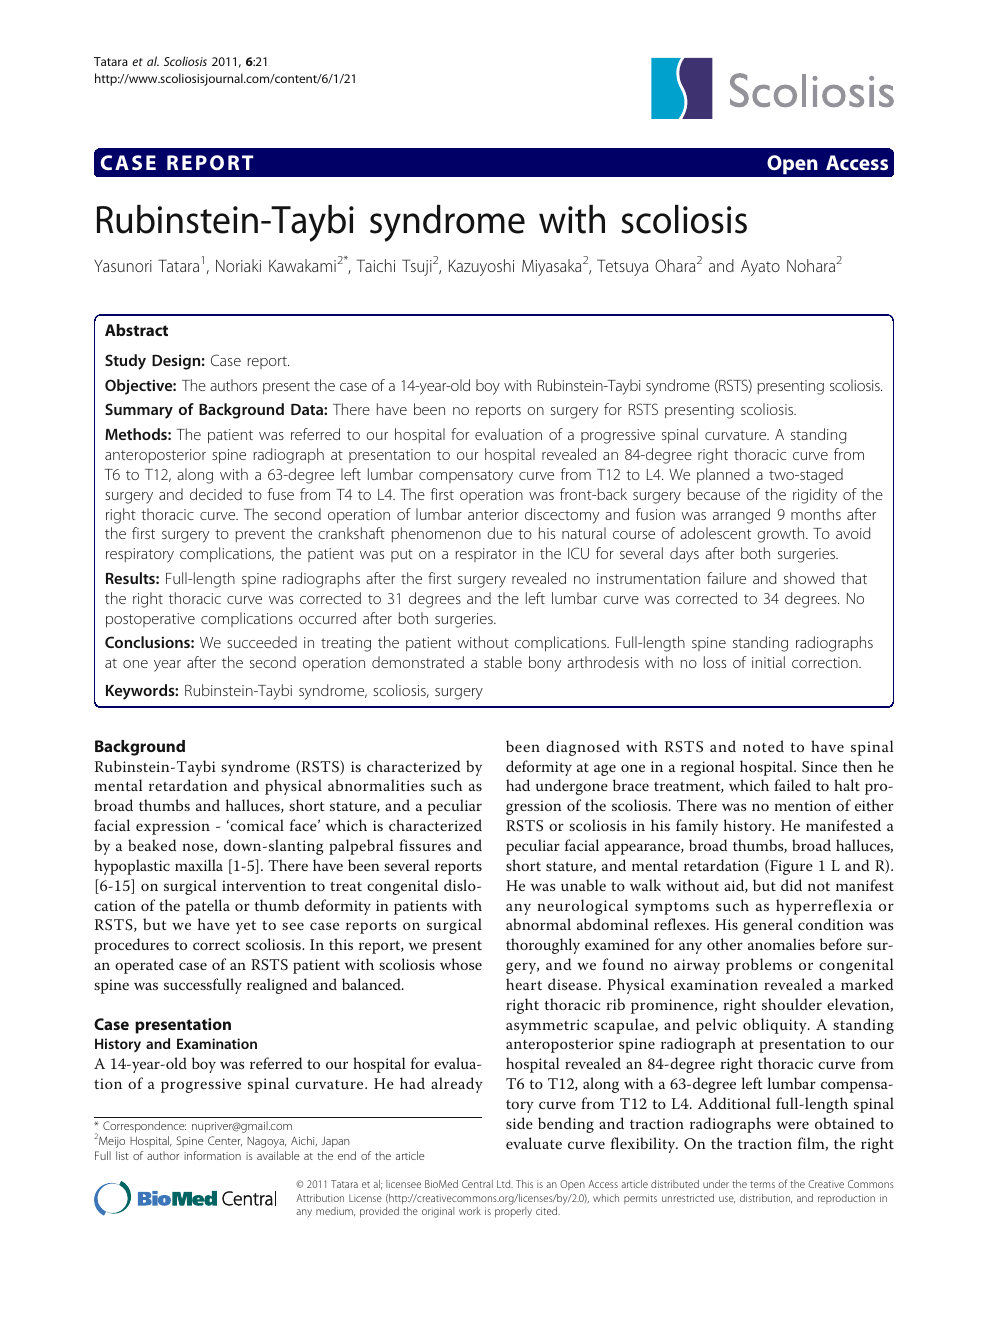 Rubinstein-Taybi Syndrome: Symptoms, Causes, Treatment